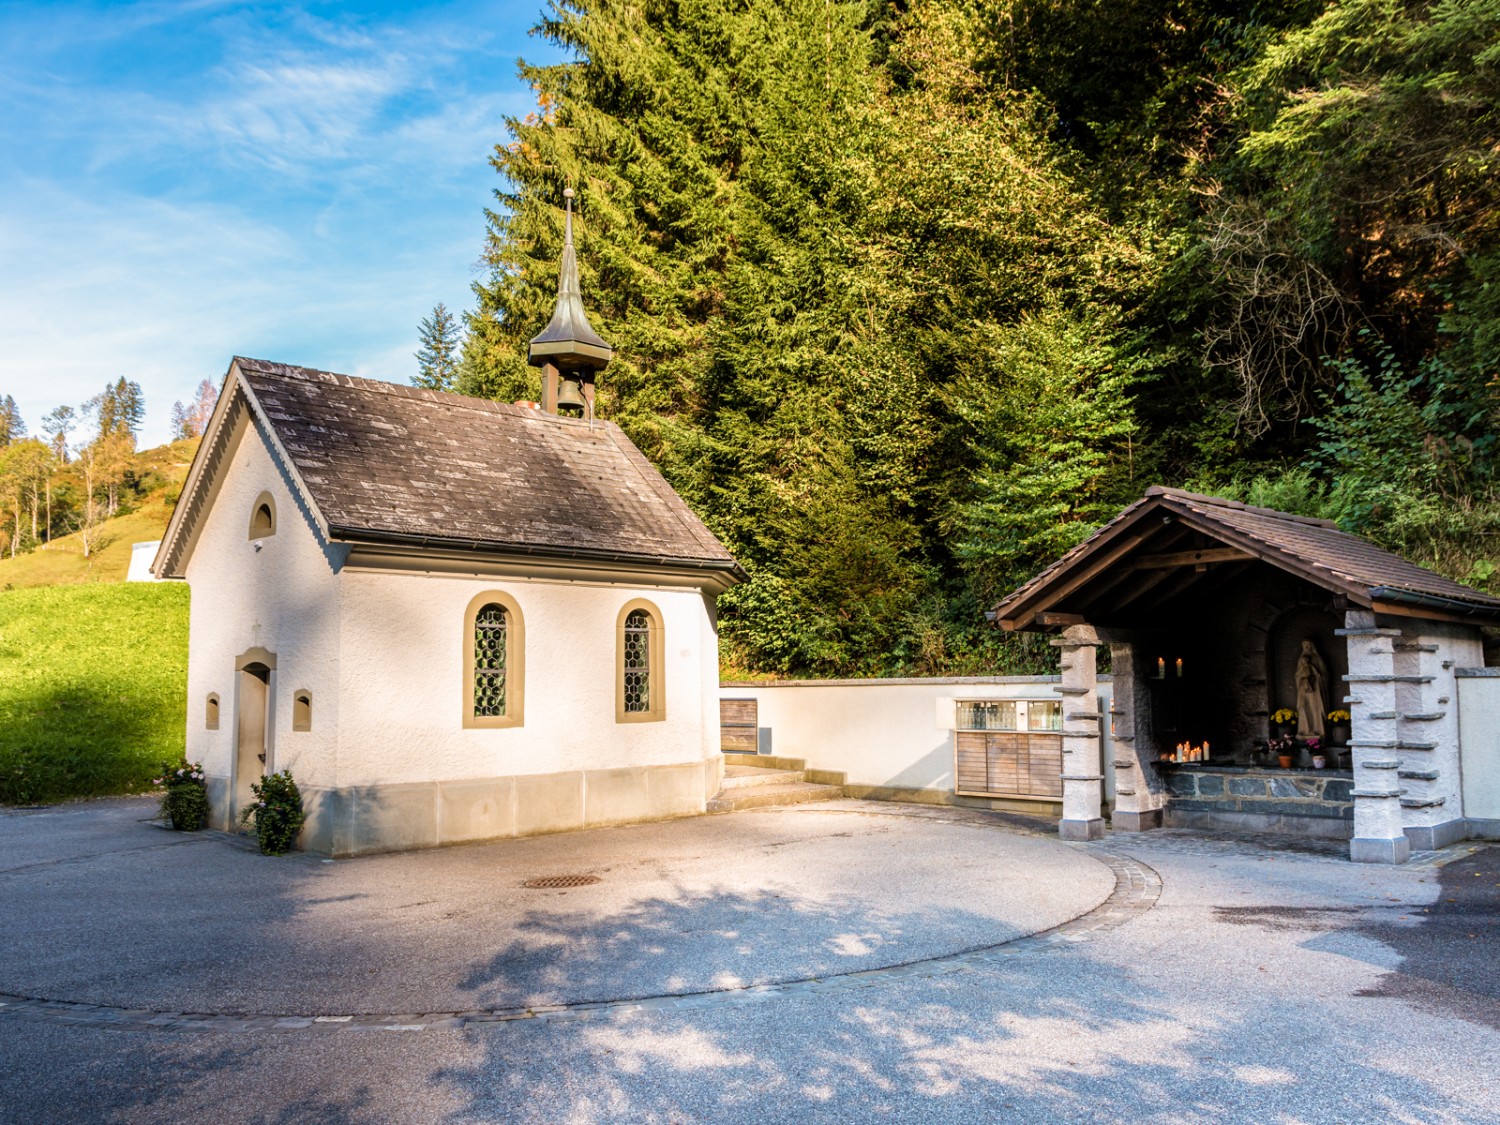 La chapelle de Luthern Bad, où se trouve la source thérapeutique. Photo: Franz Ulrich